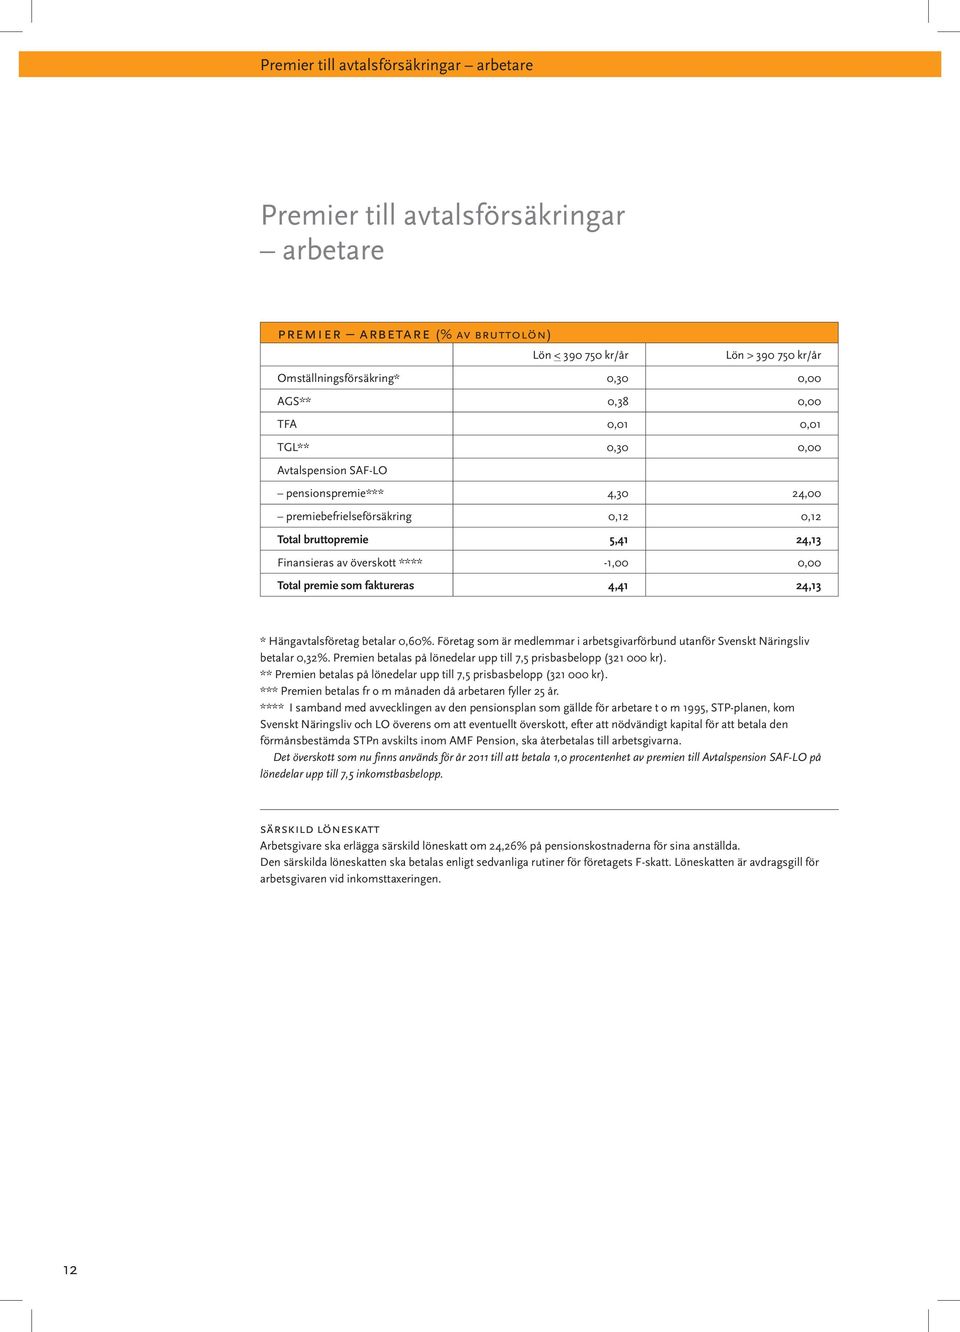 Total premie som faktureras 4,41 24,13 * Hängavtalsföretag betalar 0,60%. Företag som är medlemmar i arbetsgivarförbund utanför Svenskt Näringsliv betalar 0,32%.